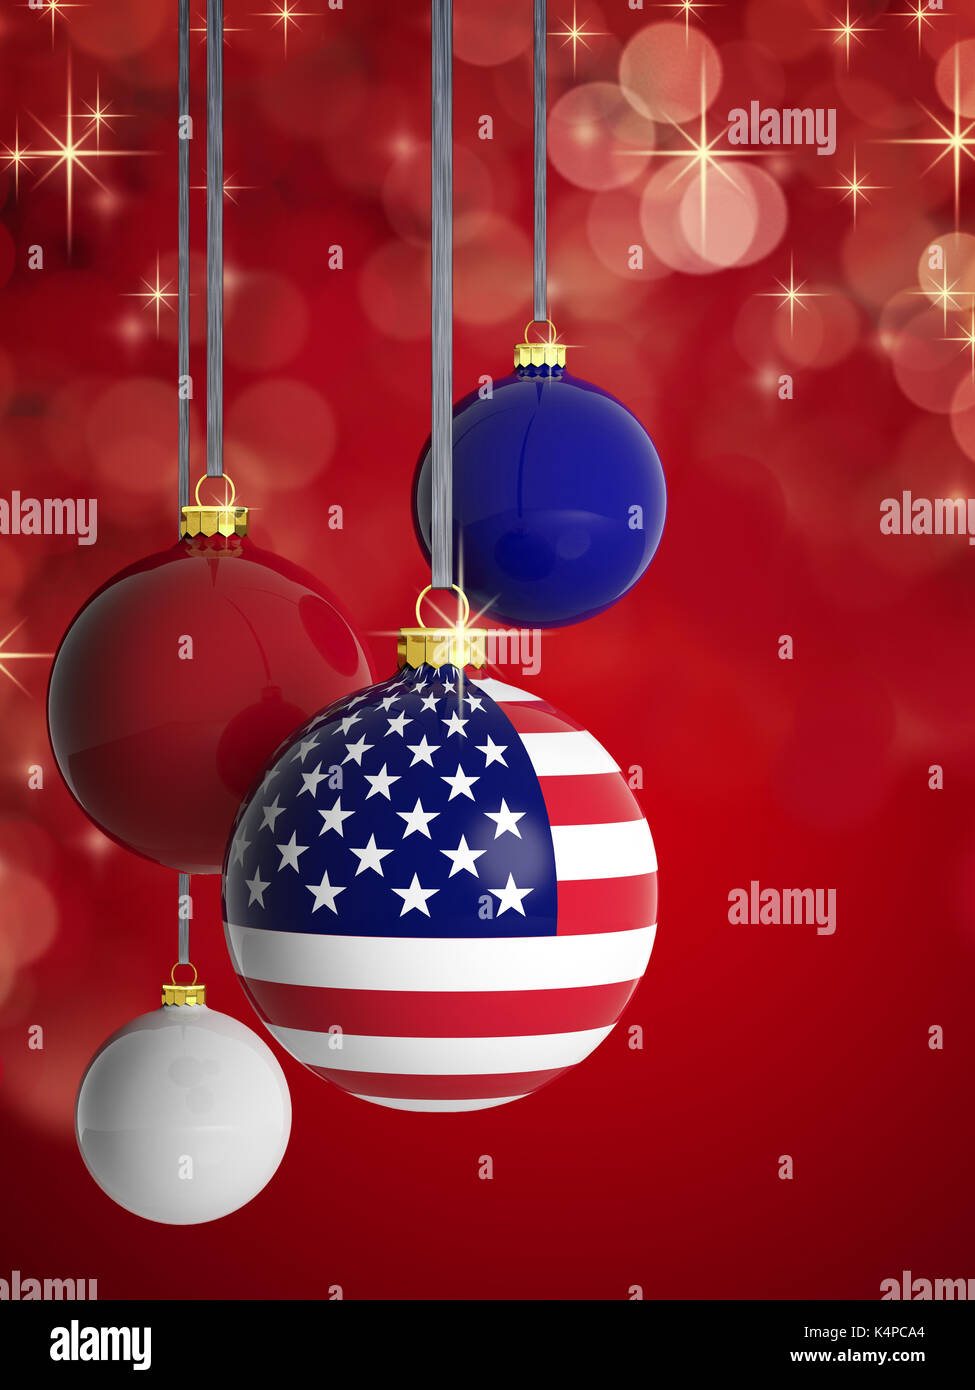 Quả cầu Giáng sinh cờ Mỹ: Quả cầu Giáng sinh cờ Mỹ làm cho lễ hội này trở nên tuyệt vời hơn bao giờ hết. Với màu sắc rực rỡ và thiết kế độc đáo, nó sẽ làm cho ngôi nhà của bạn trở nên đầy cảm hứng. Hãy xem hình ảnh để cảm nhận vẻ đẹp của quả cầu Giáng sinh này.